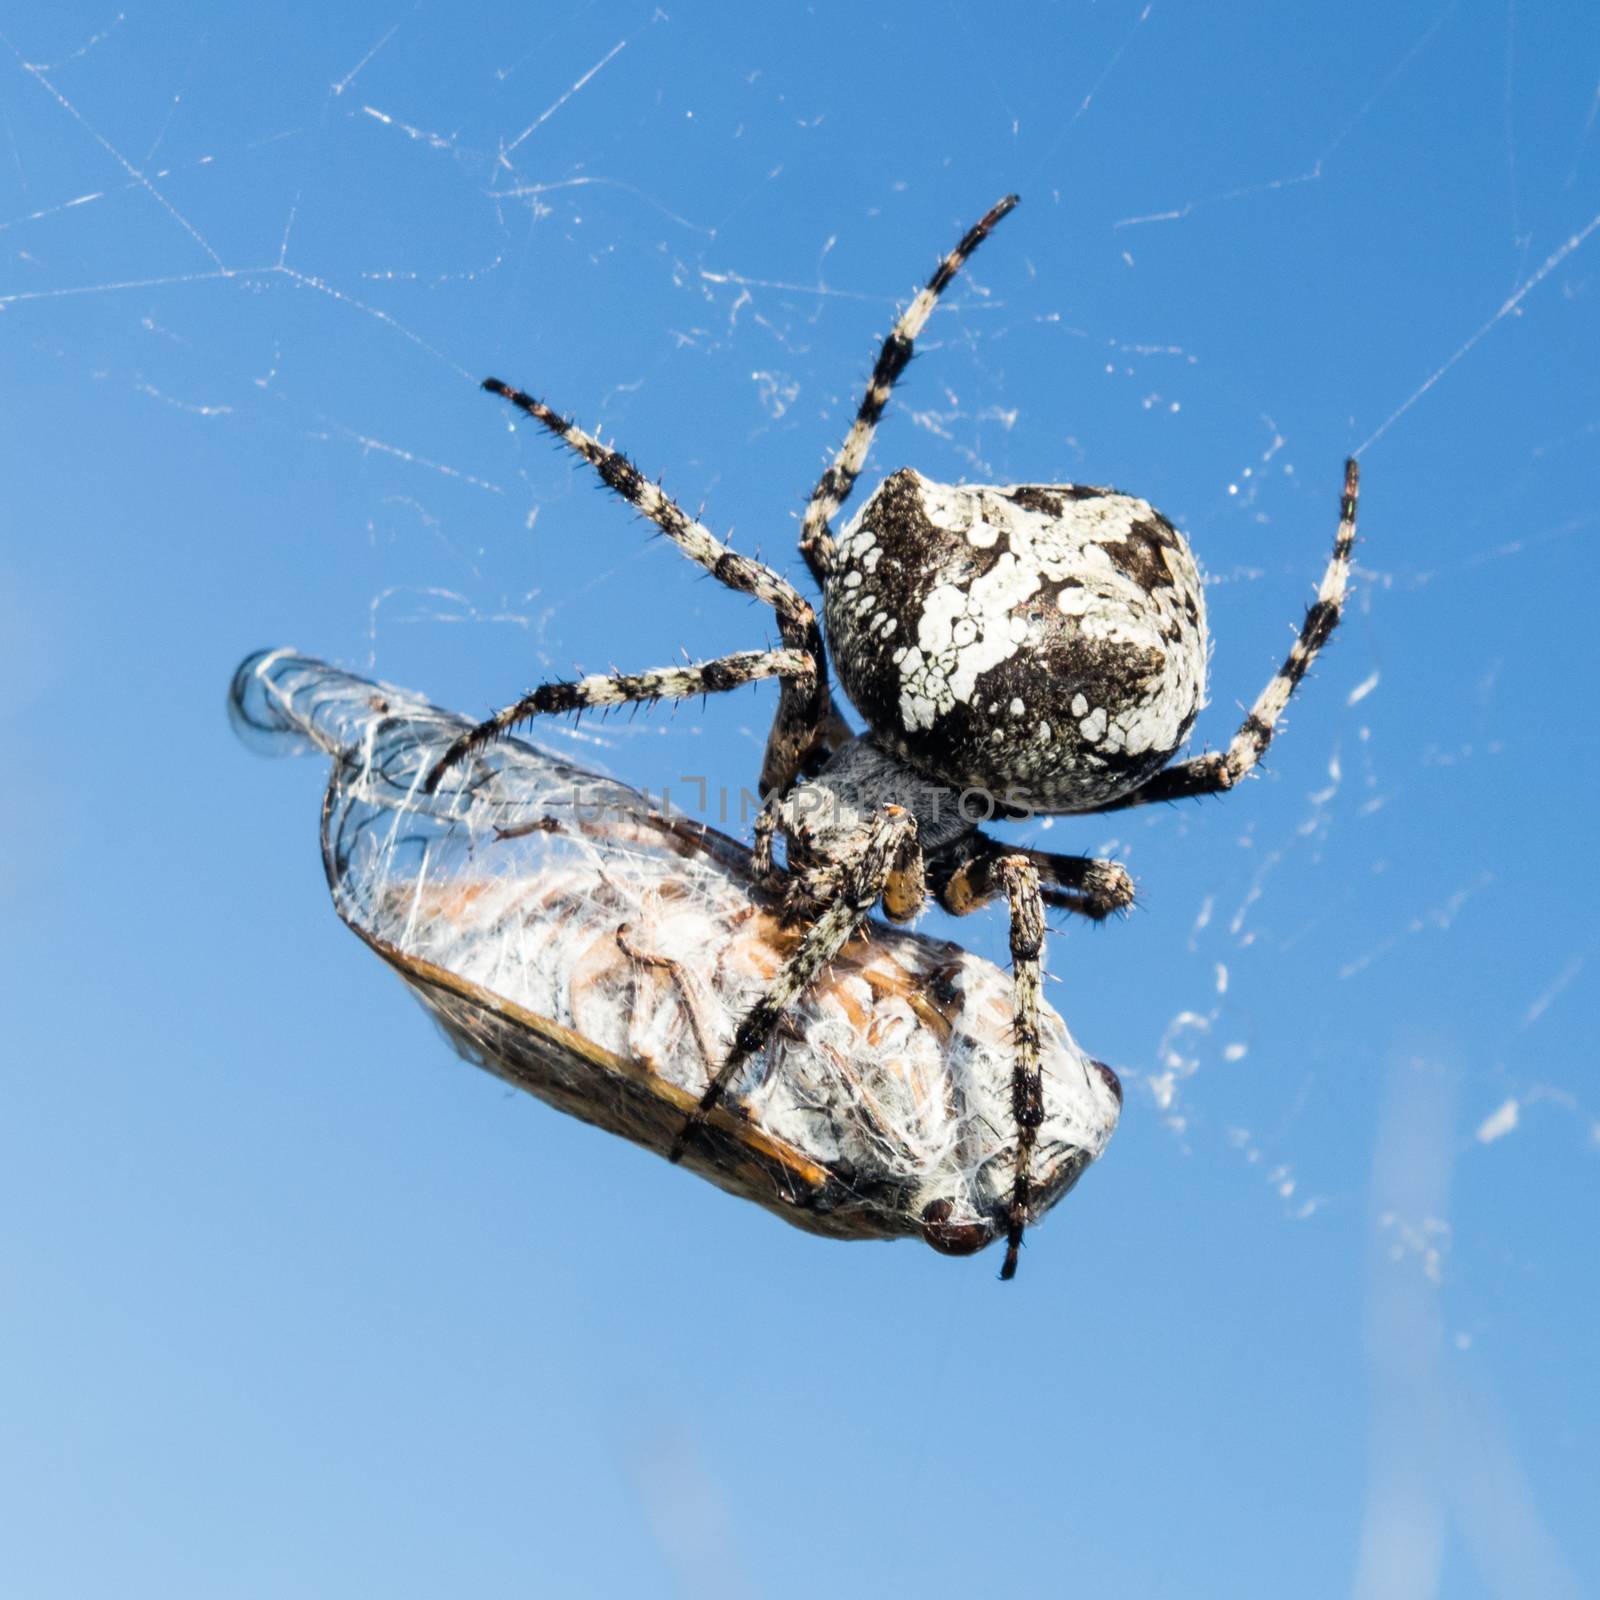 European Garden Spider, Araneus Diadematus or Cross spider with pray in spider web by kasto